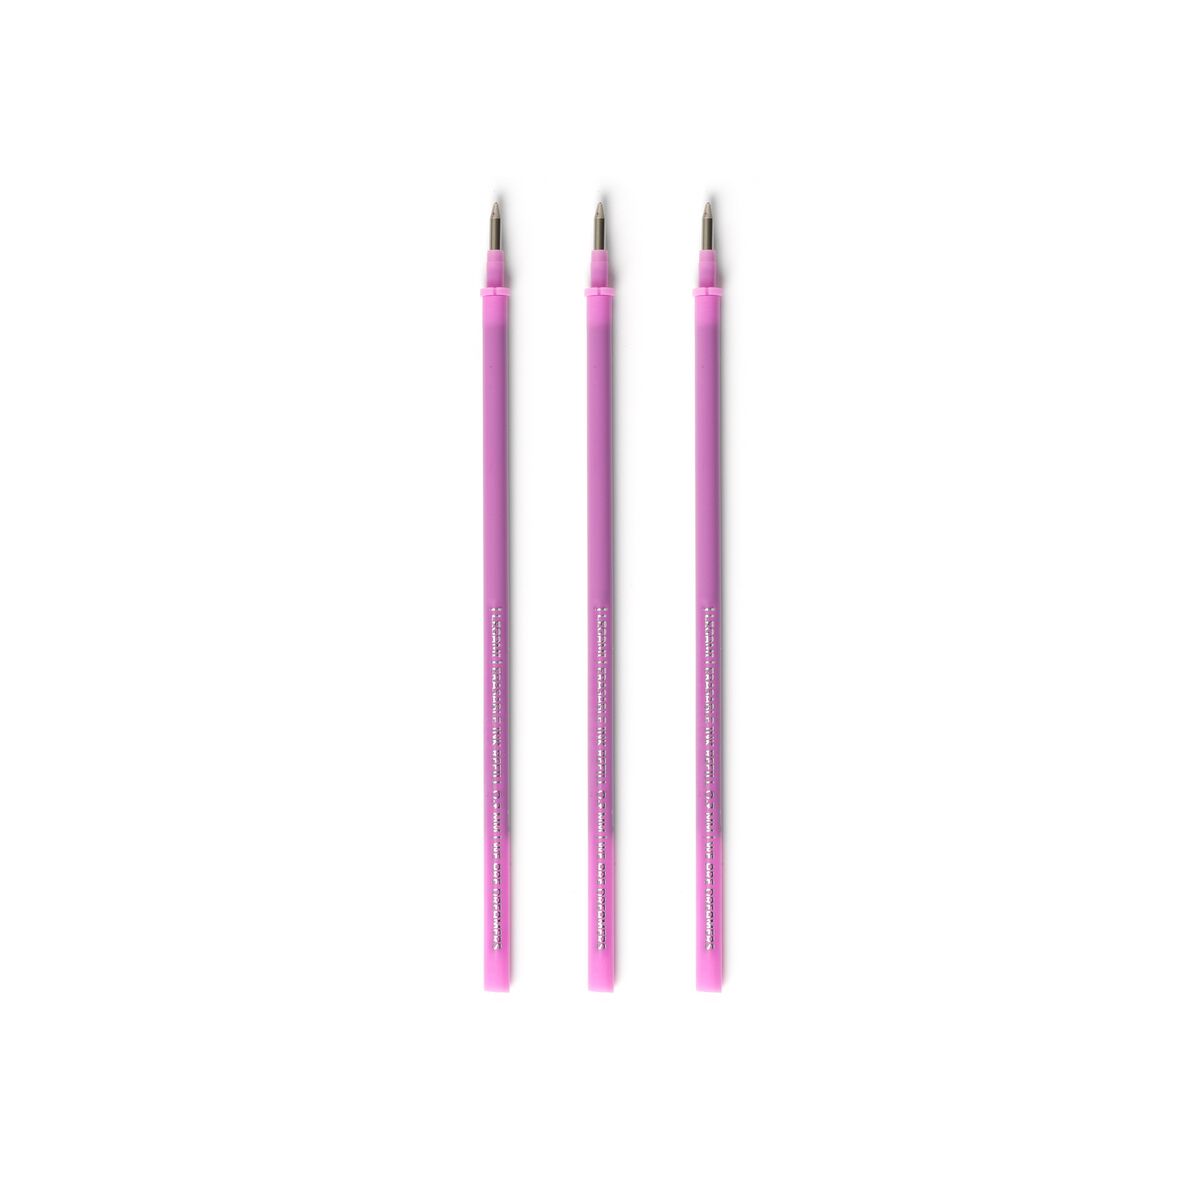 Refill per Penna Gel Cancellabile - Erasable Pen PURPLE